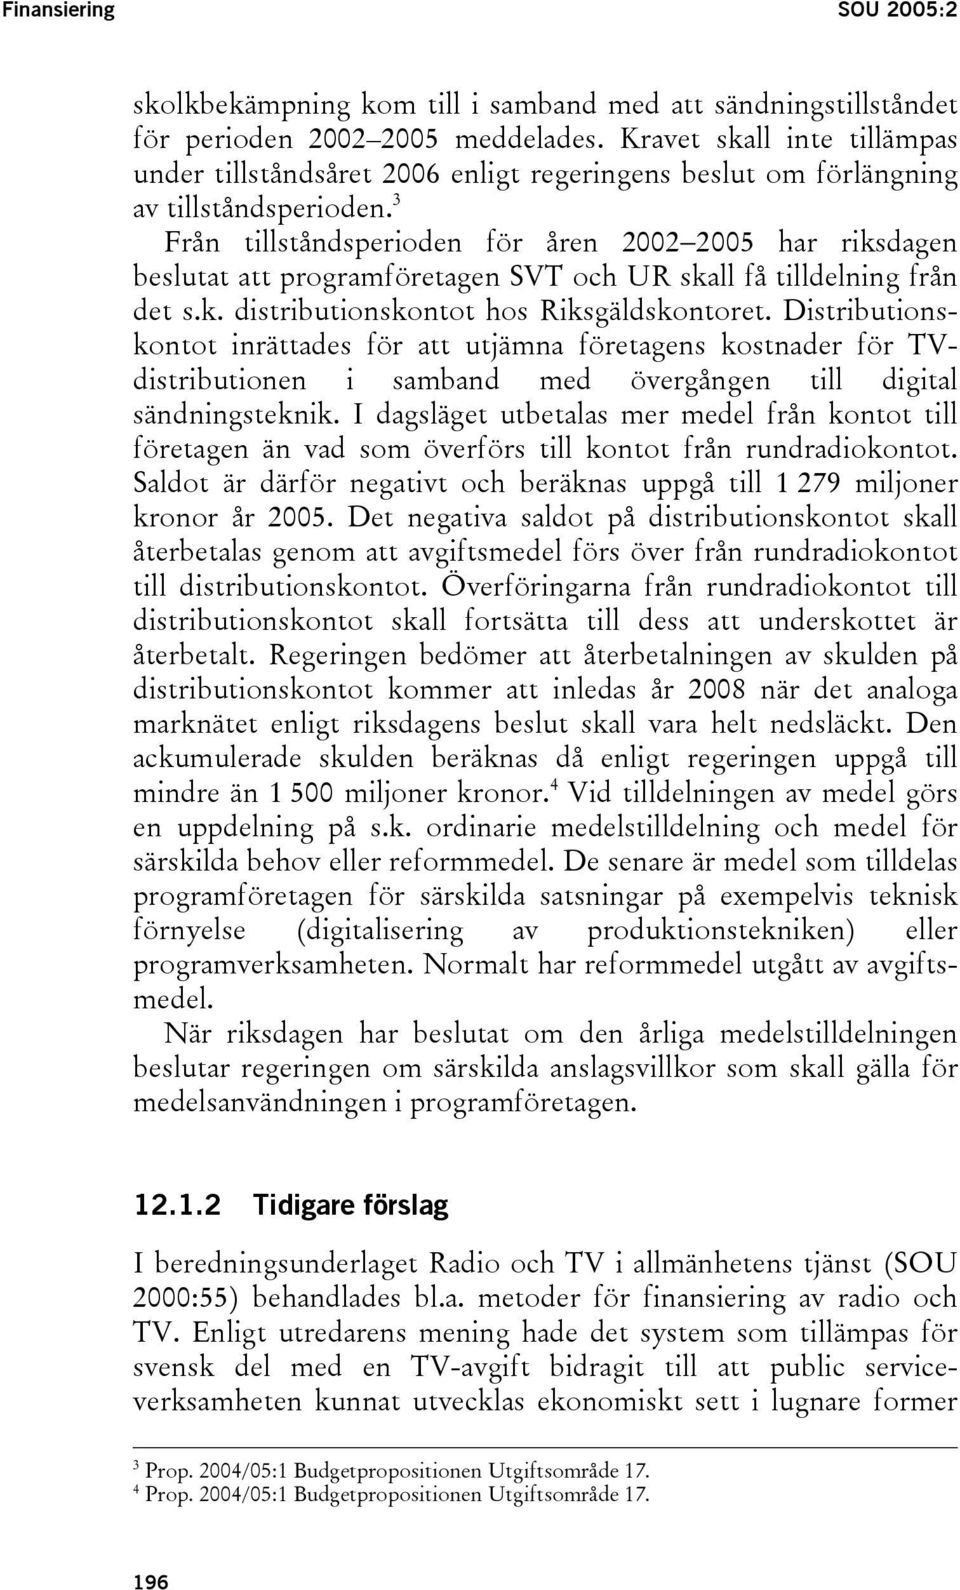 3 Från tillståndsperioden för åren 2002 2005 har riksdagen beslutat att programföretagen SVT och UR skall få tilldelning från det s.k. distributionskontot hos Riksgäldskontoret.